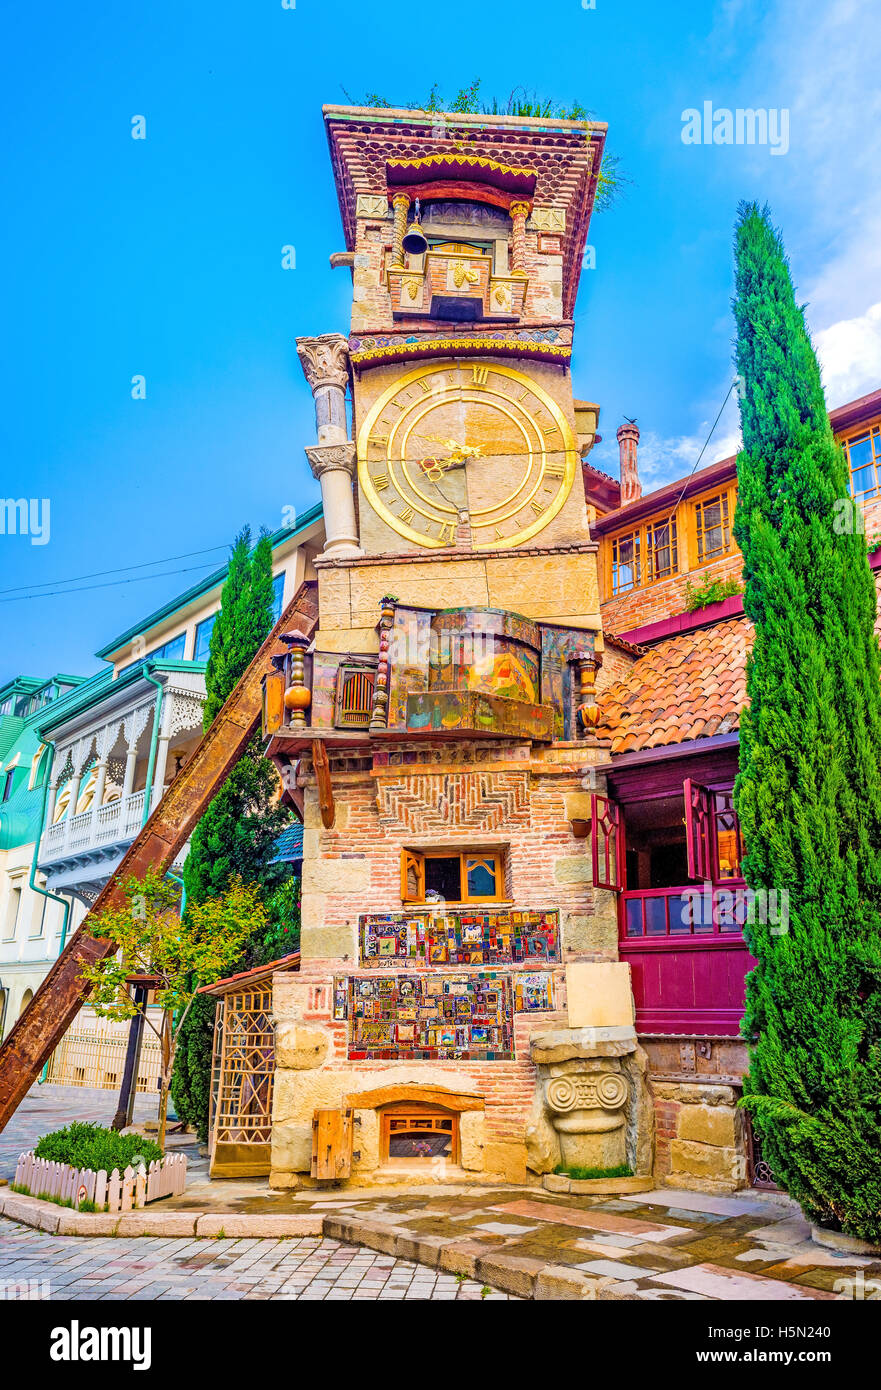 La tour penchée inhabituelle du théâtre de marionnettes attire les touristes à visiter la rue Shavteli et profiter de la vue, Tbilisi Banque D'Images